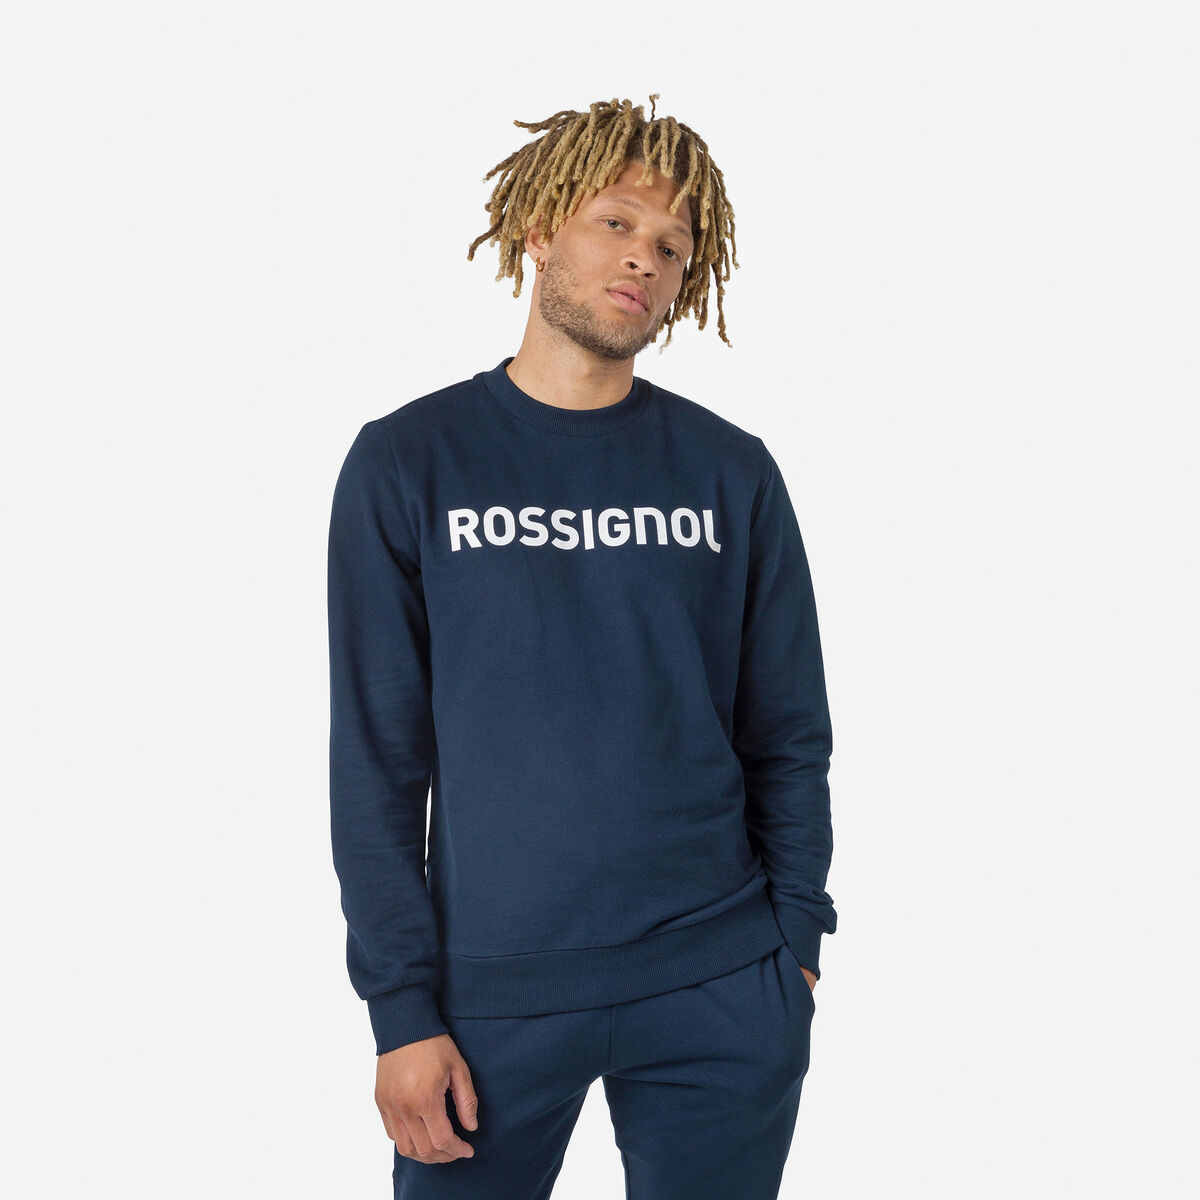 Rossignol Men's logo cotton sweatshirt round neck Blue